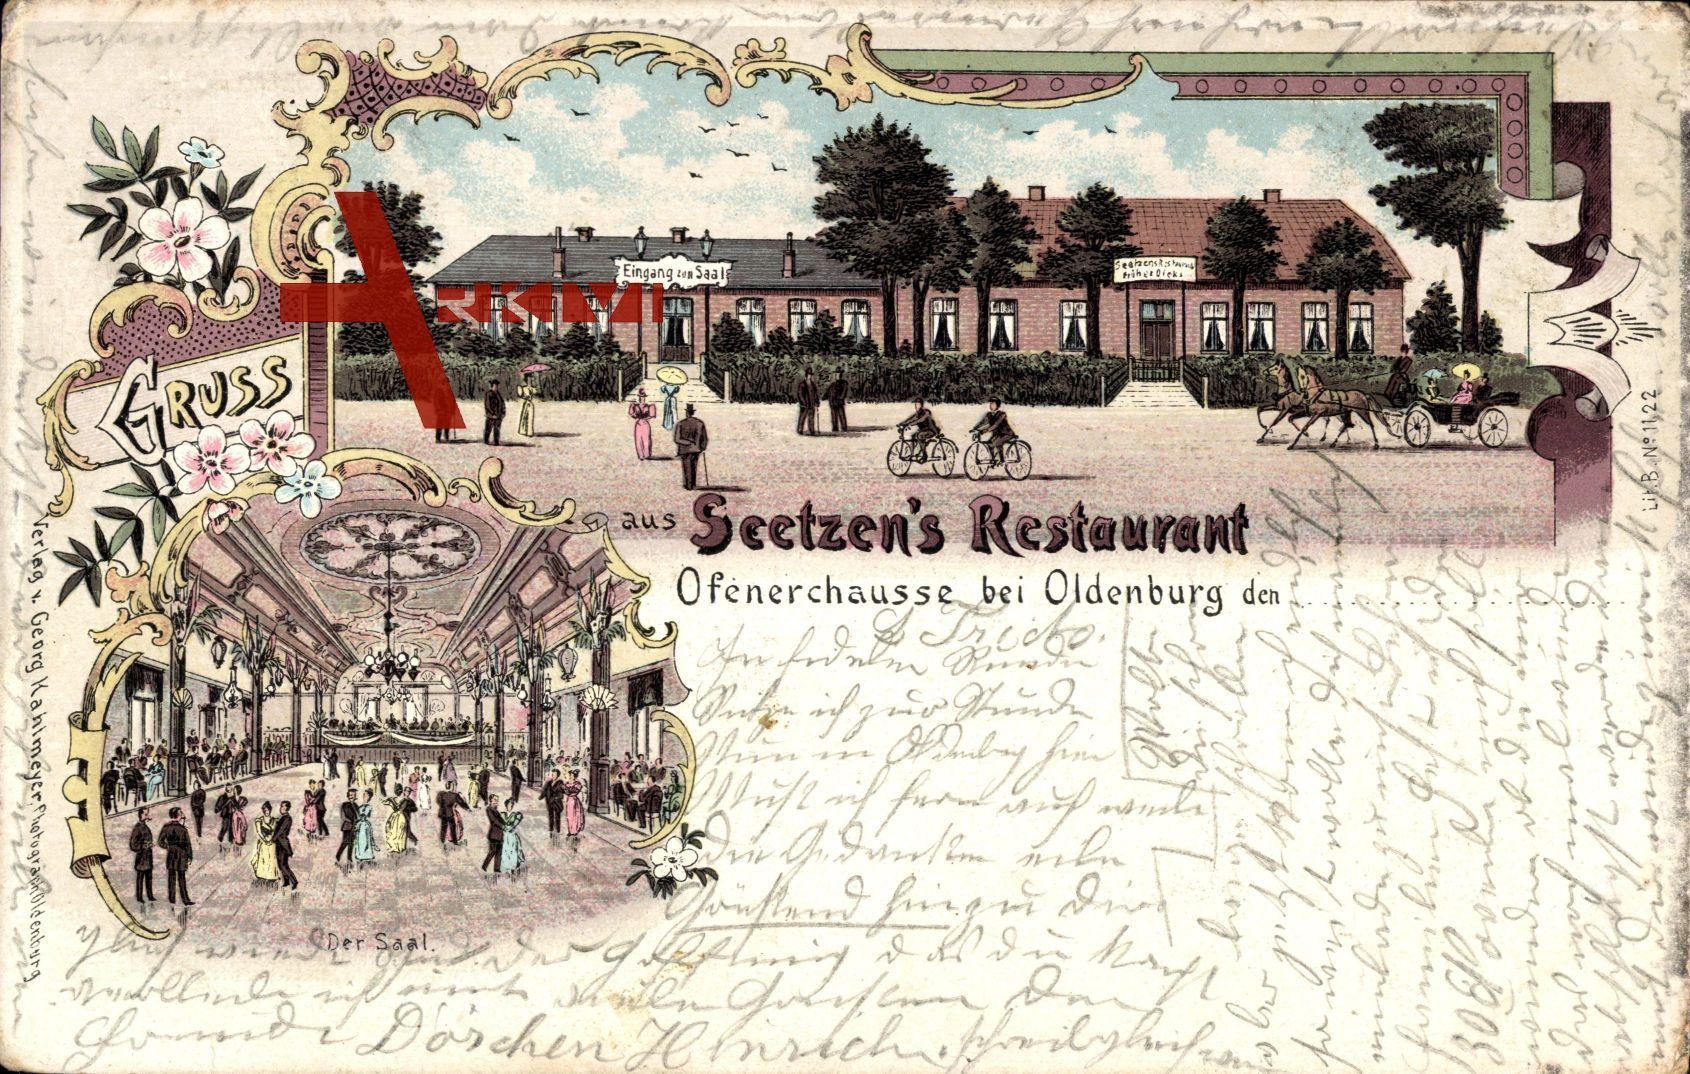 Oldenburg, Seetzens Restaurant, Ofenerchaussee, Saal